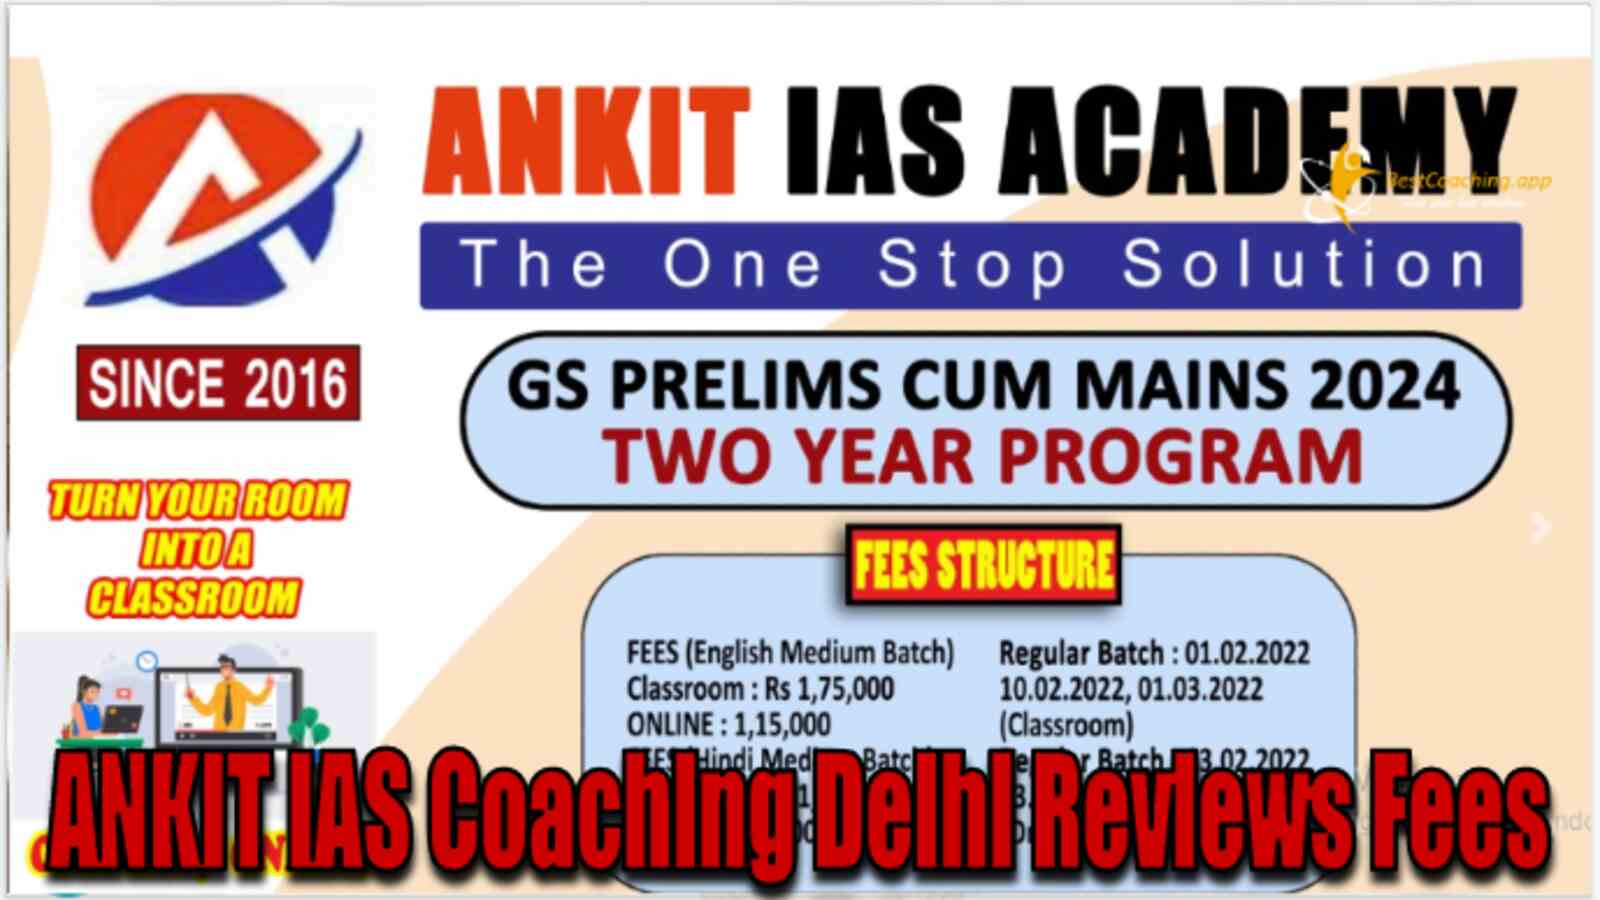 ANKIT IAS Coaching Delhi Review Fees